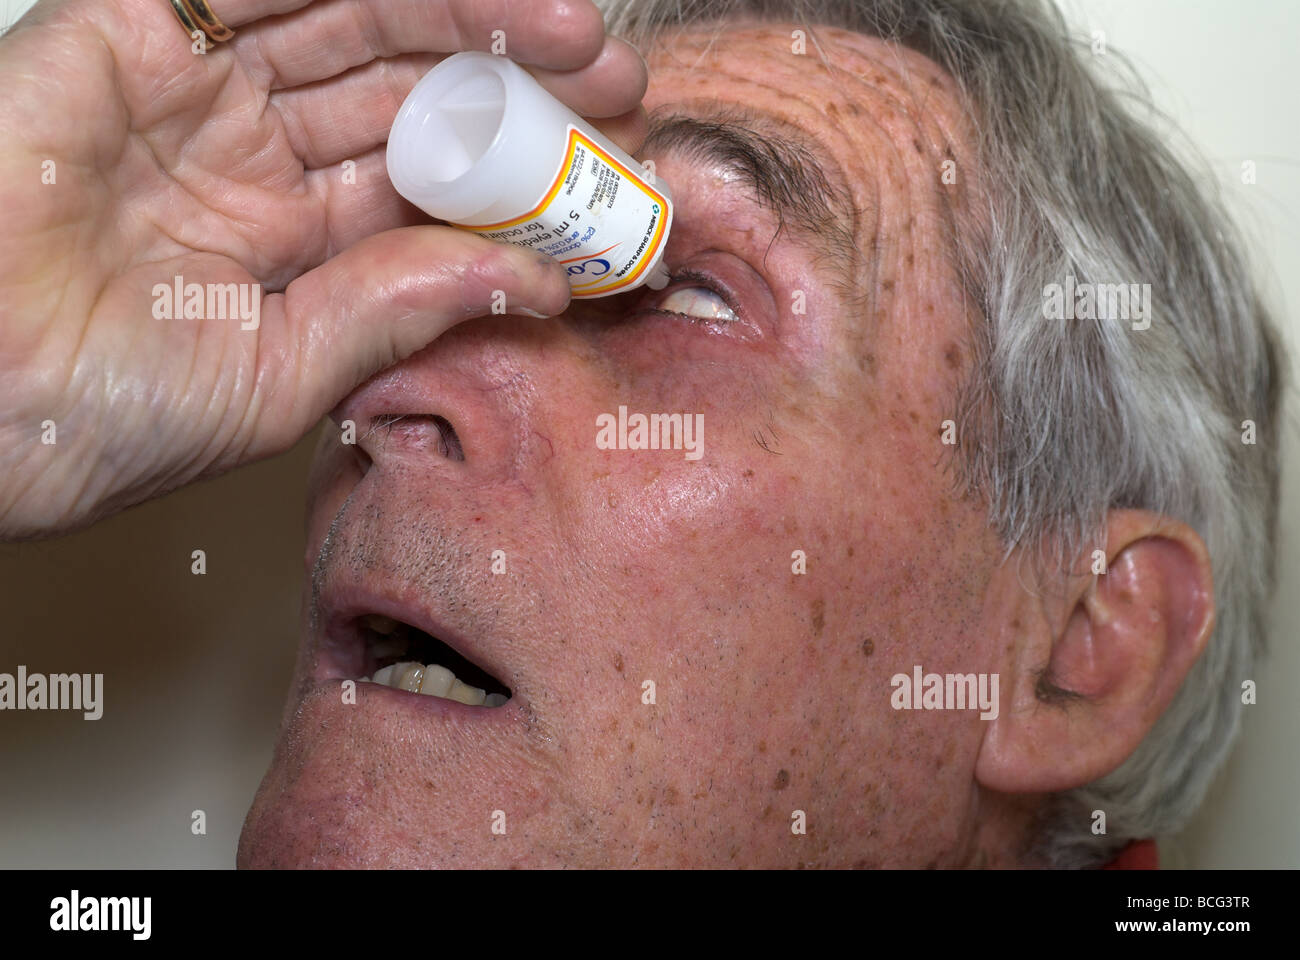 Applying eye drops to treat cataracts Stock Photo